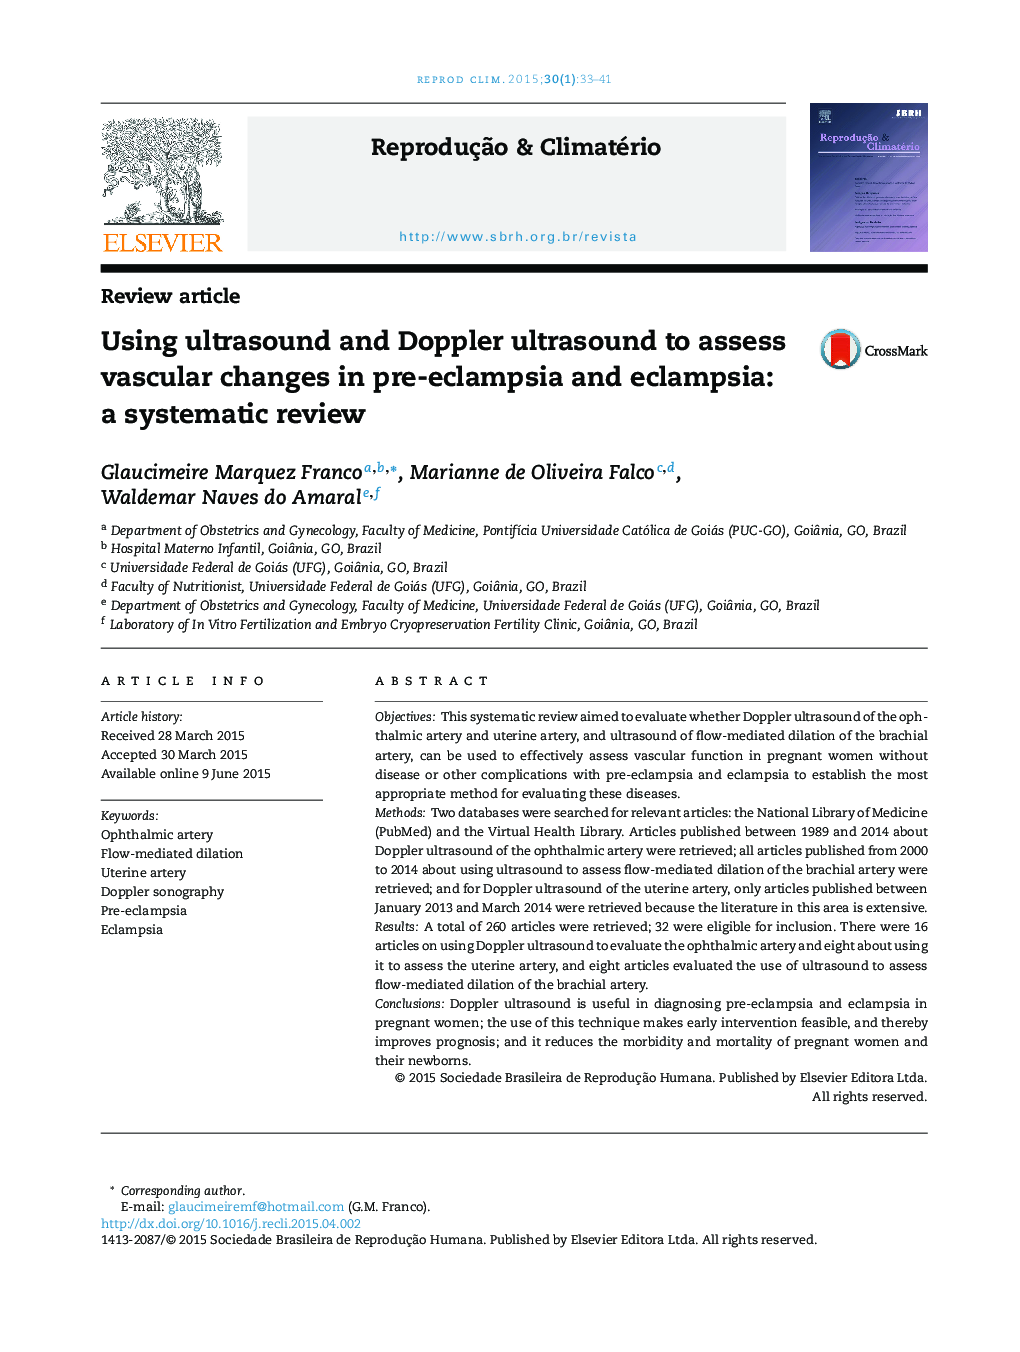 با استفاده از سونوگرافی اولتراسوند و داپلر برای ارزیابی تغییرات عروقی در پیش اکلامپسی و اکلامپسی: بررسی سیستماتیک 